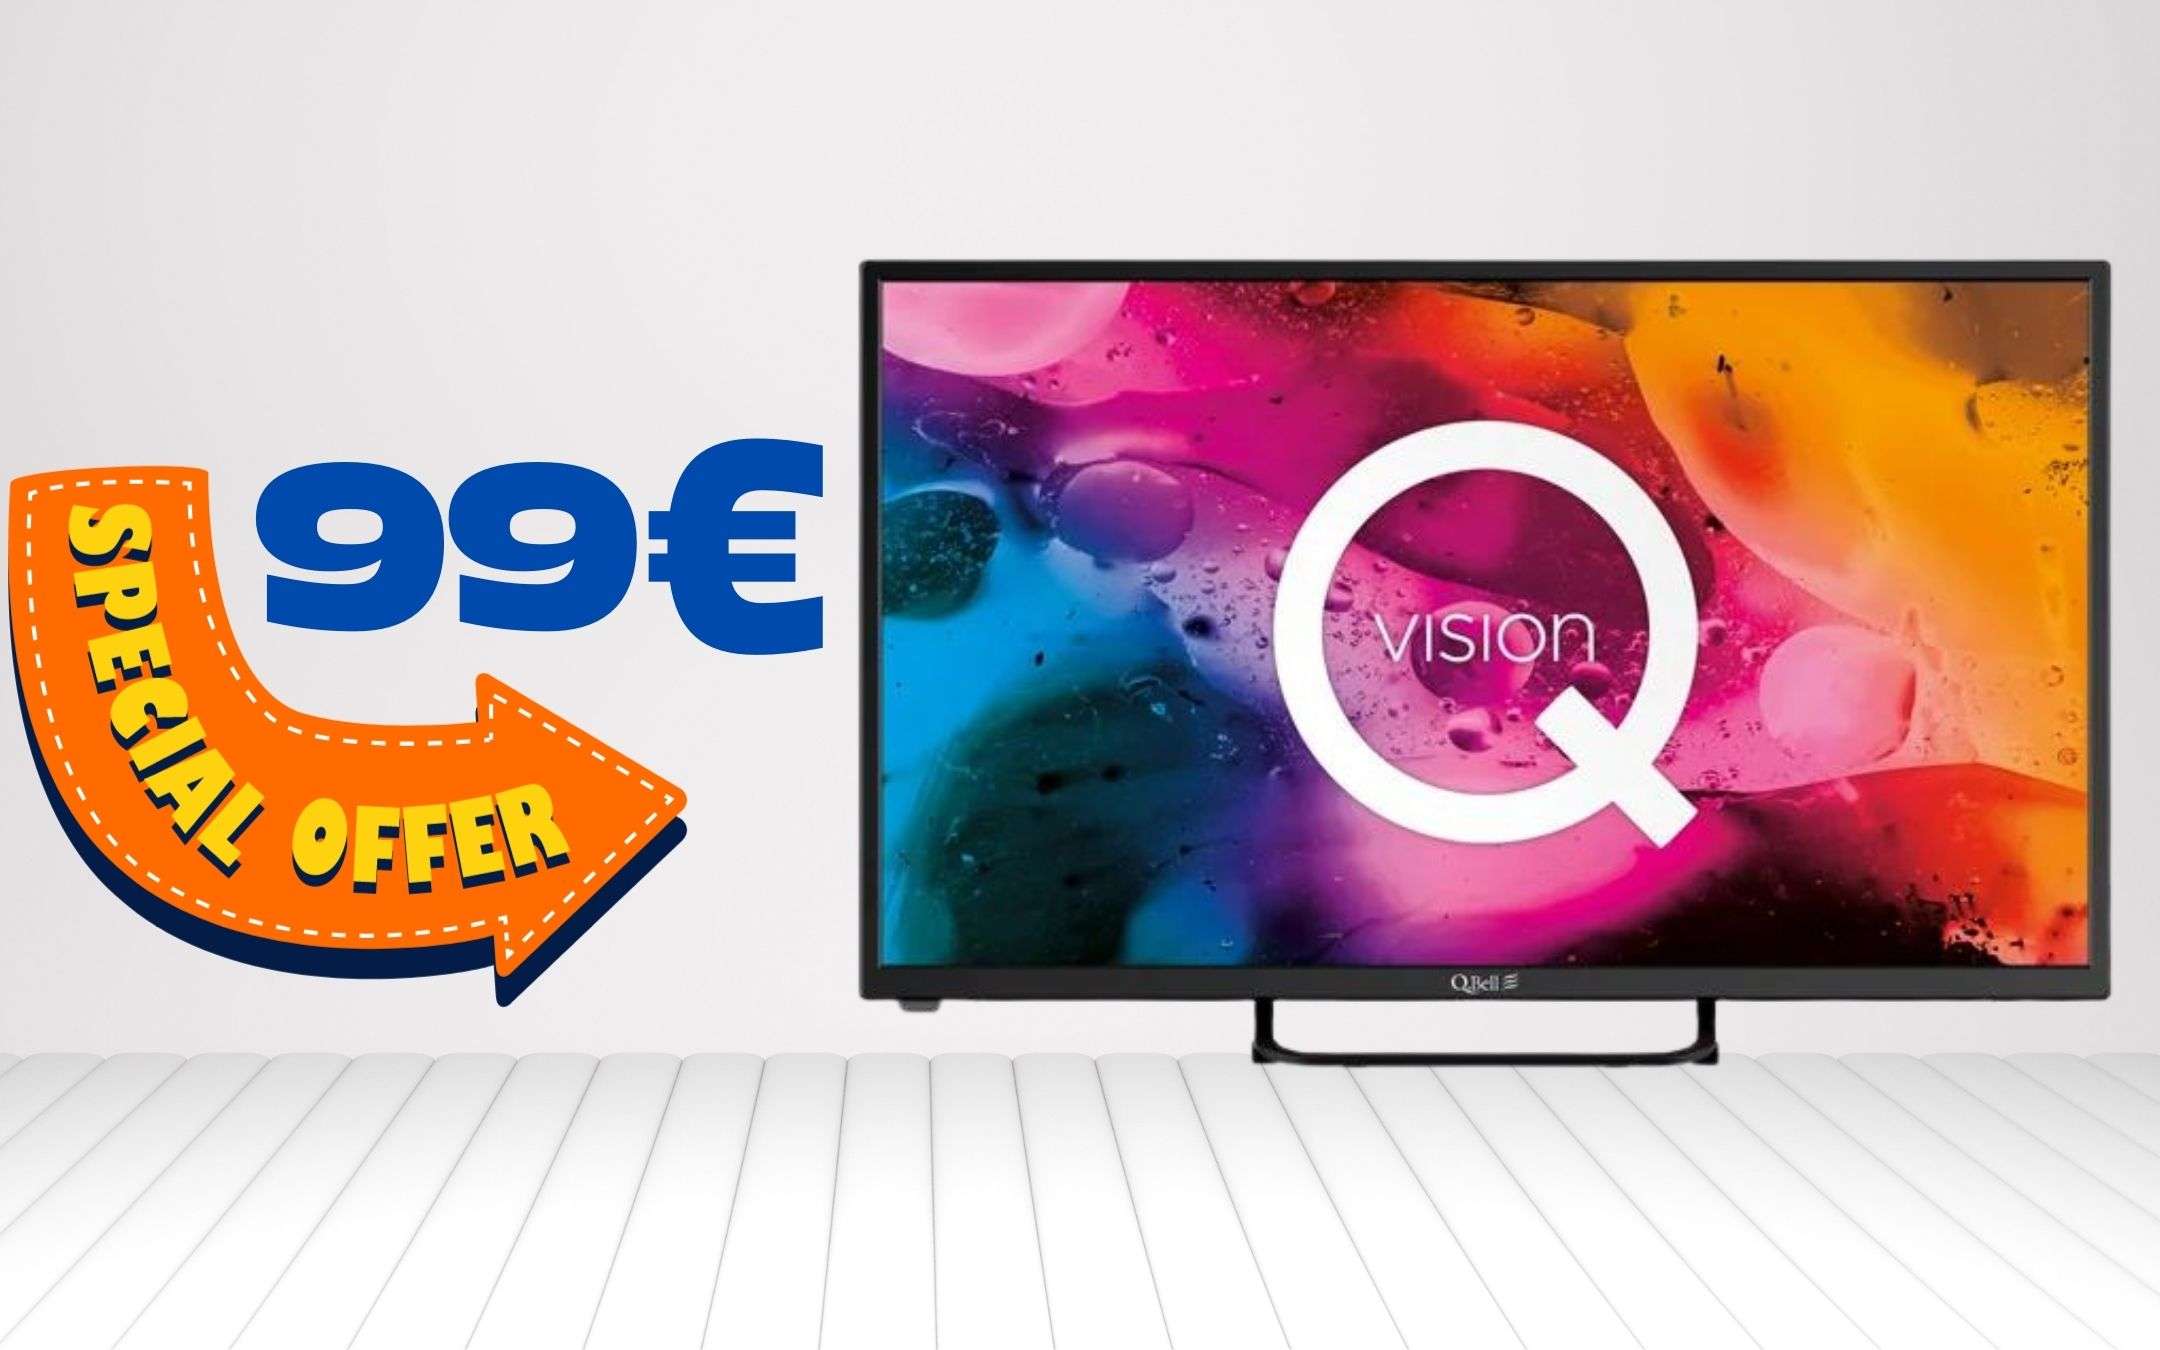 Ottima TV 32 a 99€ con spedizioni gratis: occasione ASSURDA (Carrefour  online)